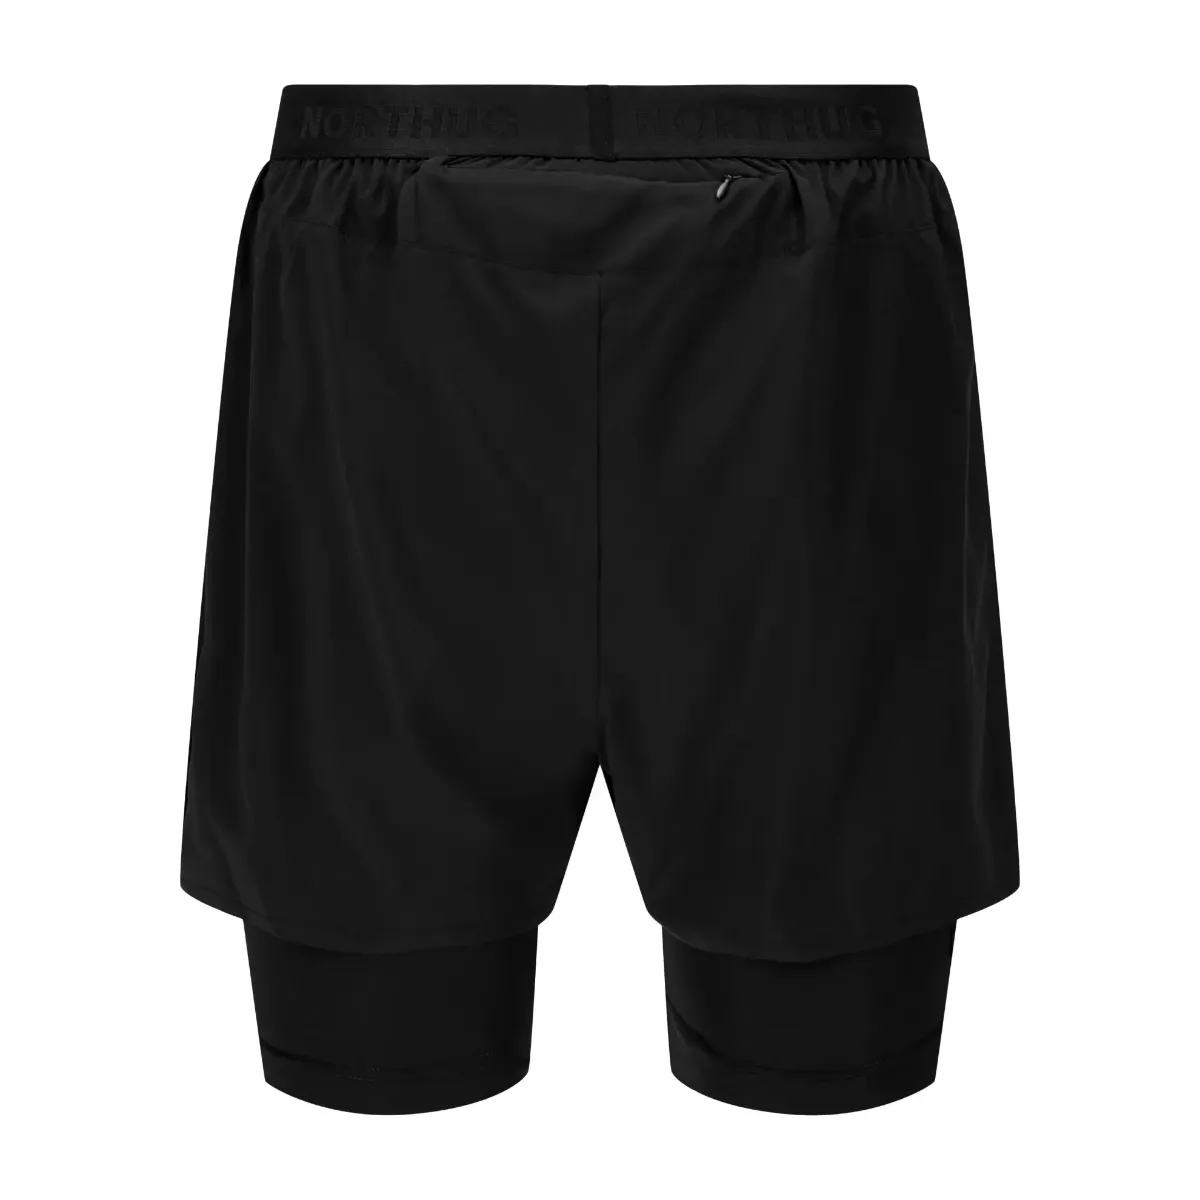 Bilde av Milan 2 in 1 shorts men